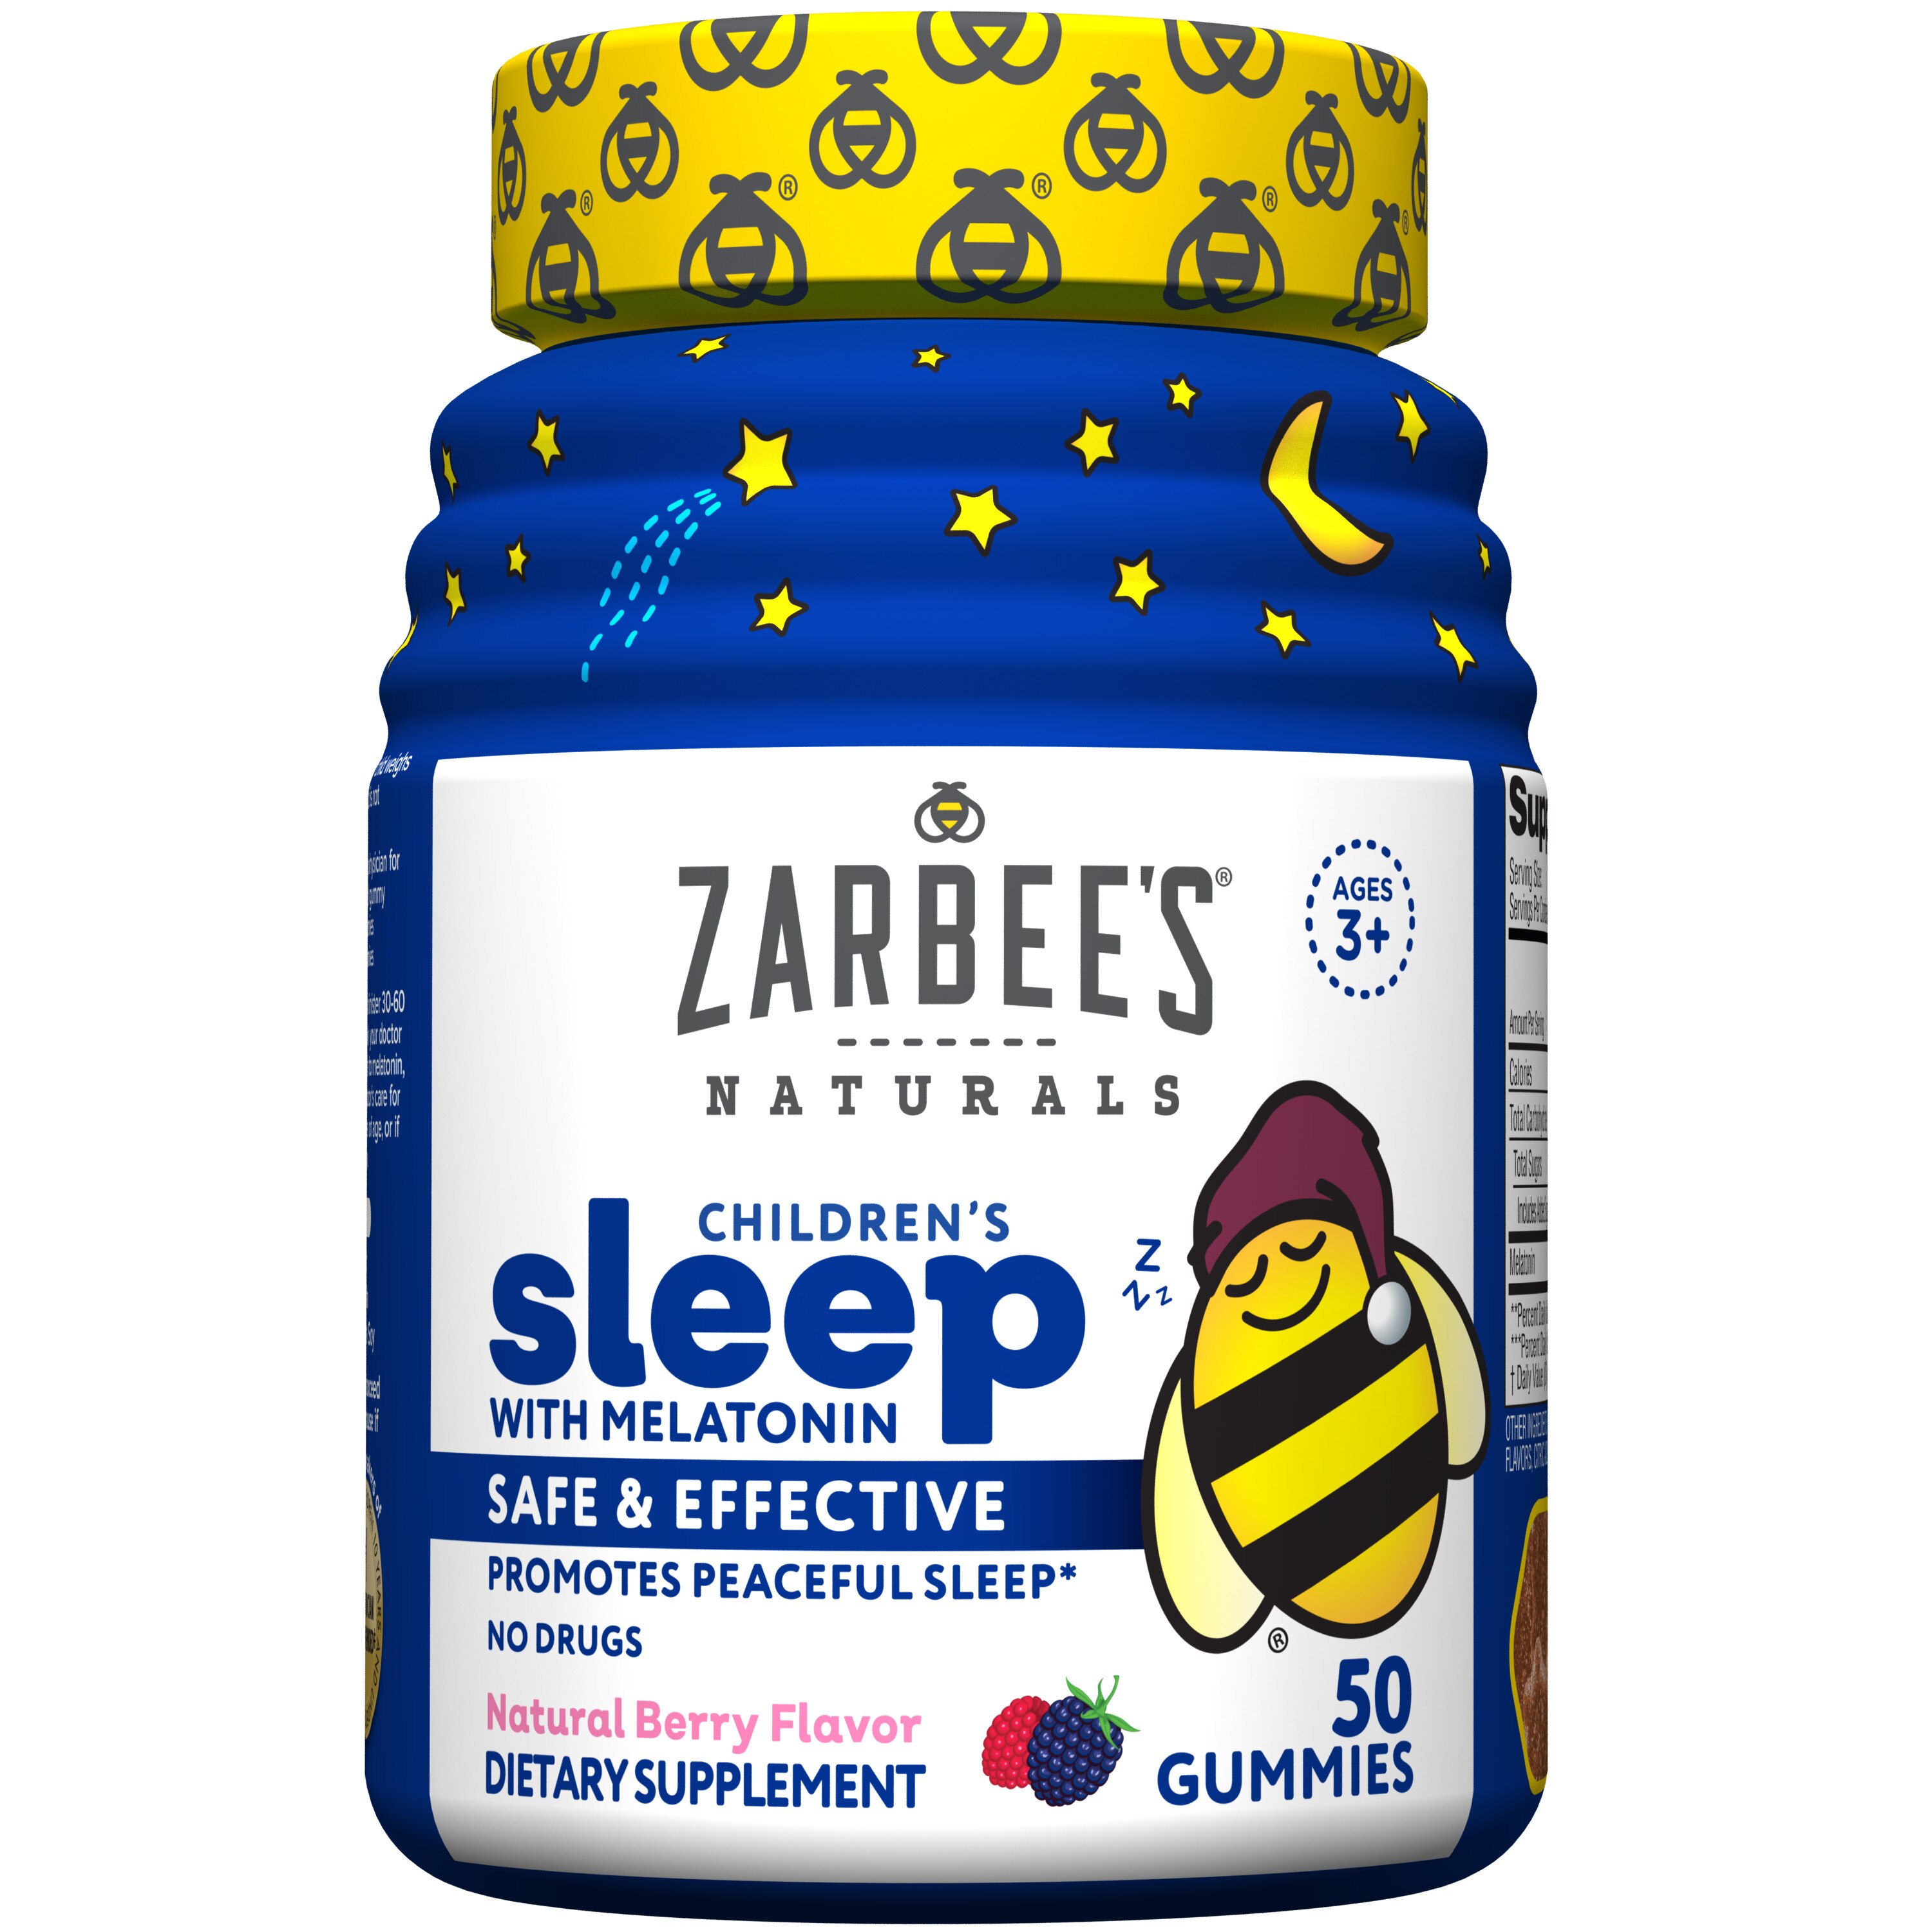 Zarbee's Naturals Children's Sleep with Melatonin Gummies, Natural Berry, 50 CT